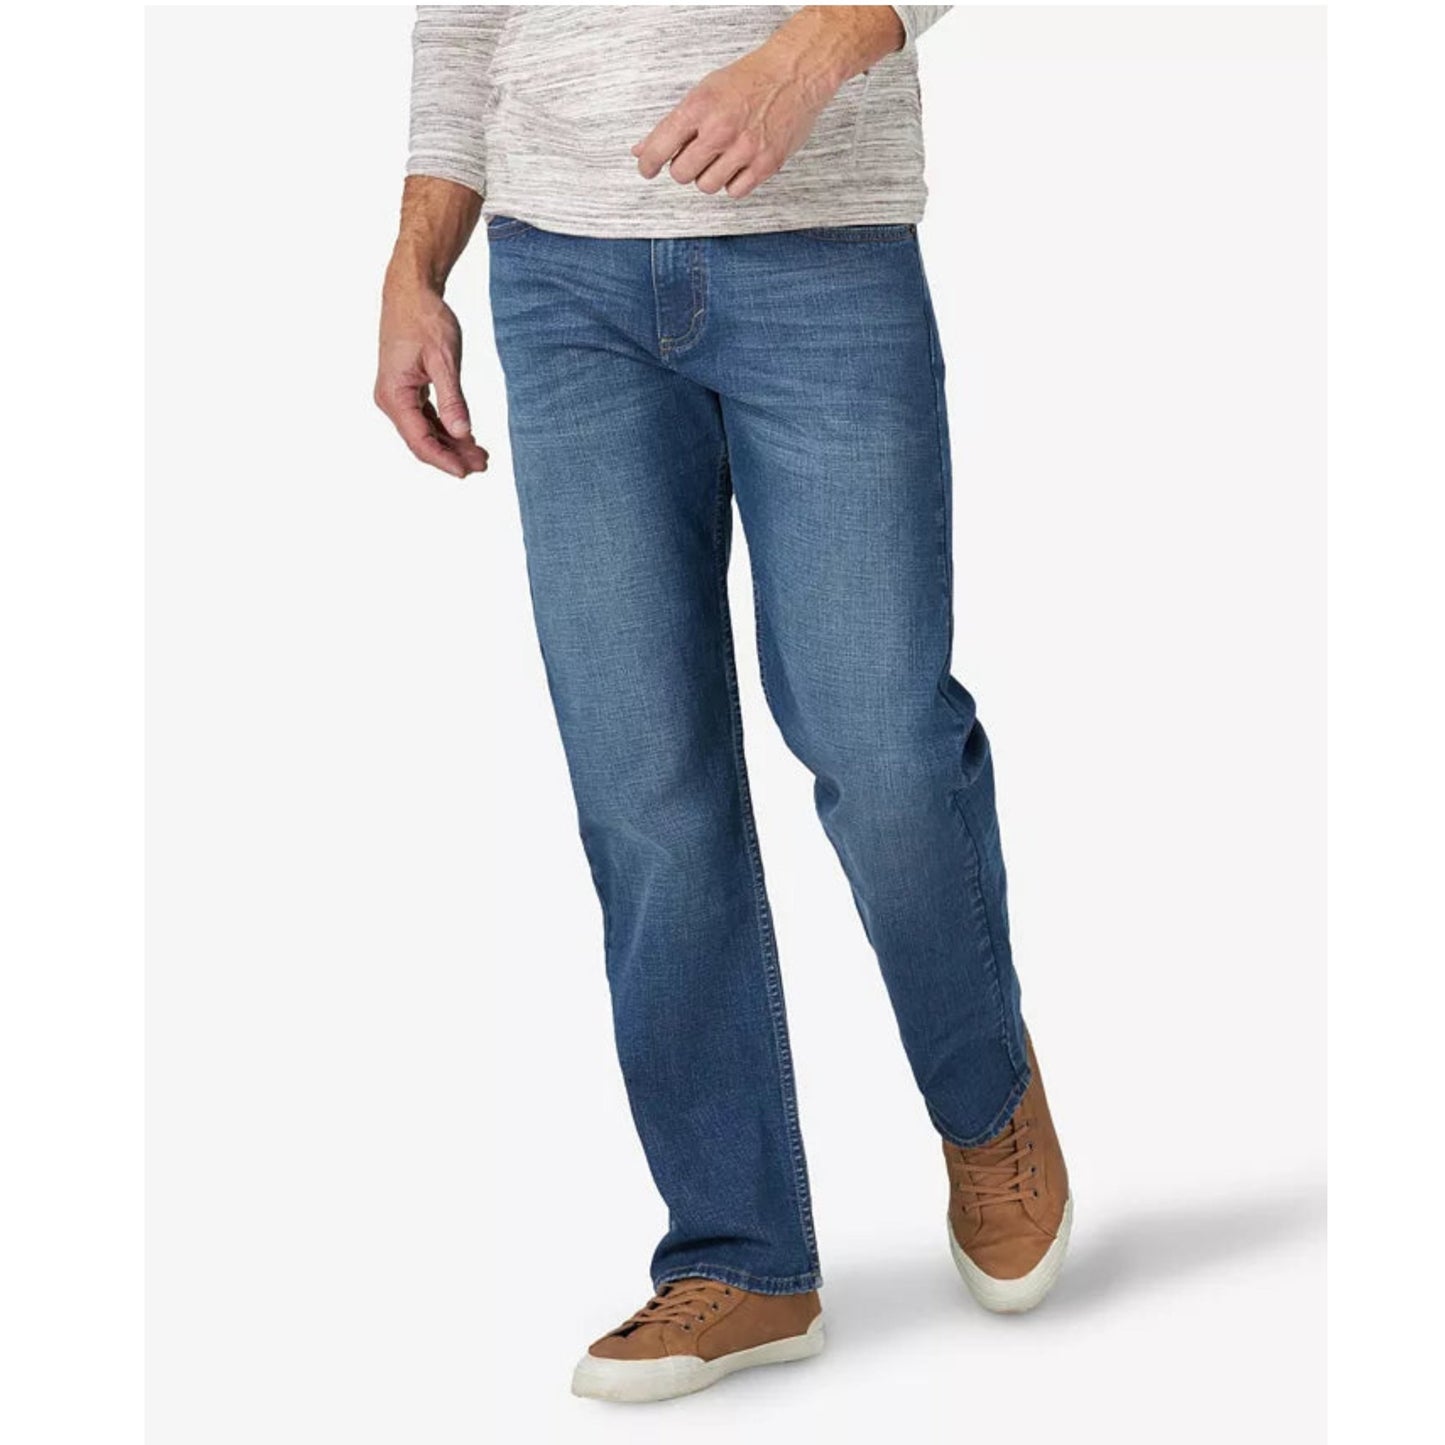 Wrangler-Wrangler Mens Relaxed Fit Jeans, Blue, Size: 32x32 - Brandat Outlet